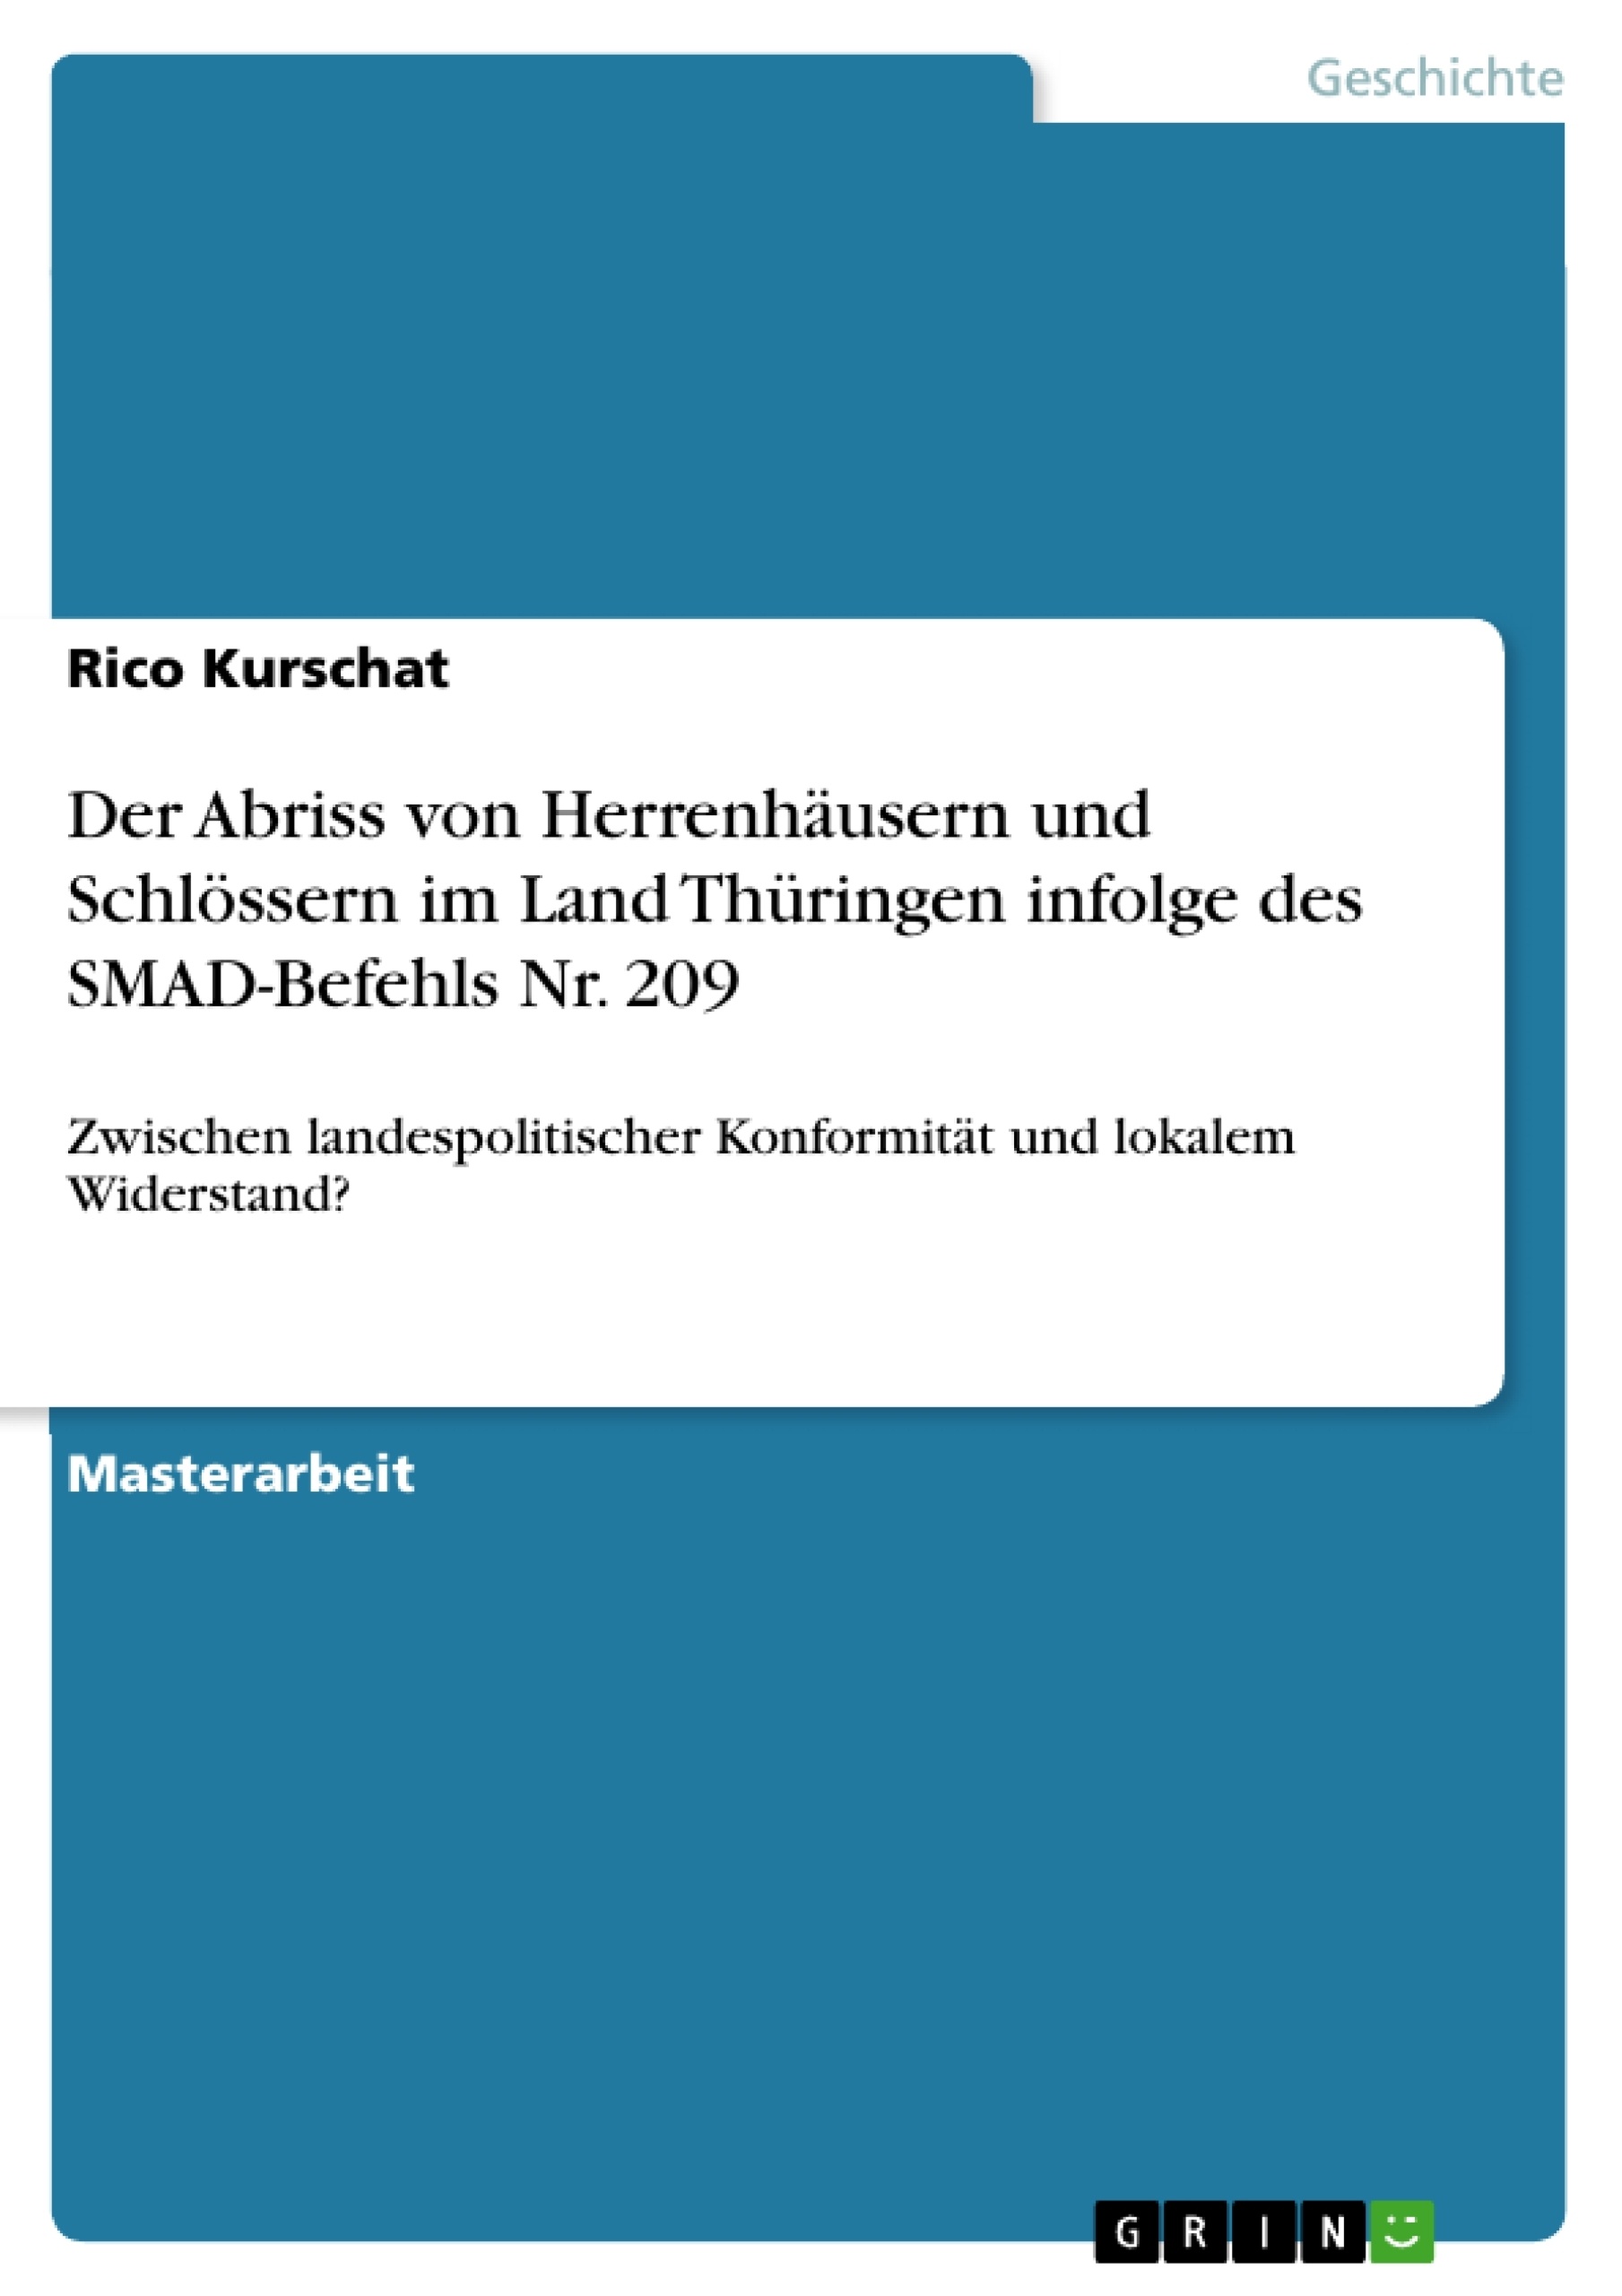 Título: Der Abriss von Herrenhäusern und Schlössern im Land Thüringen infolge des SMAD-Befehls Nr. 209